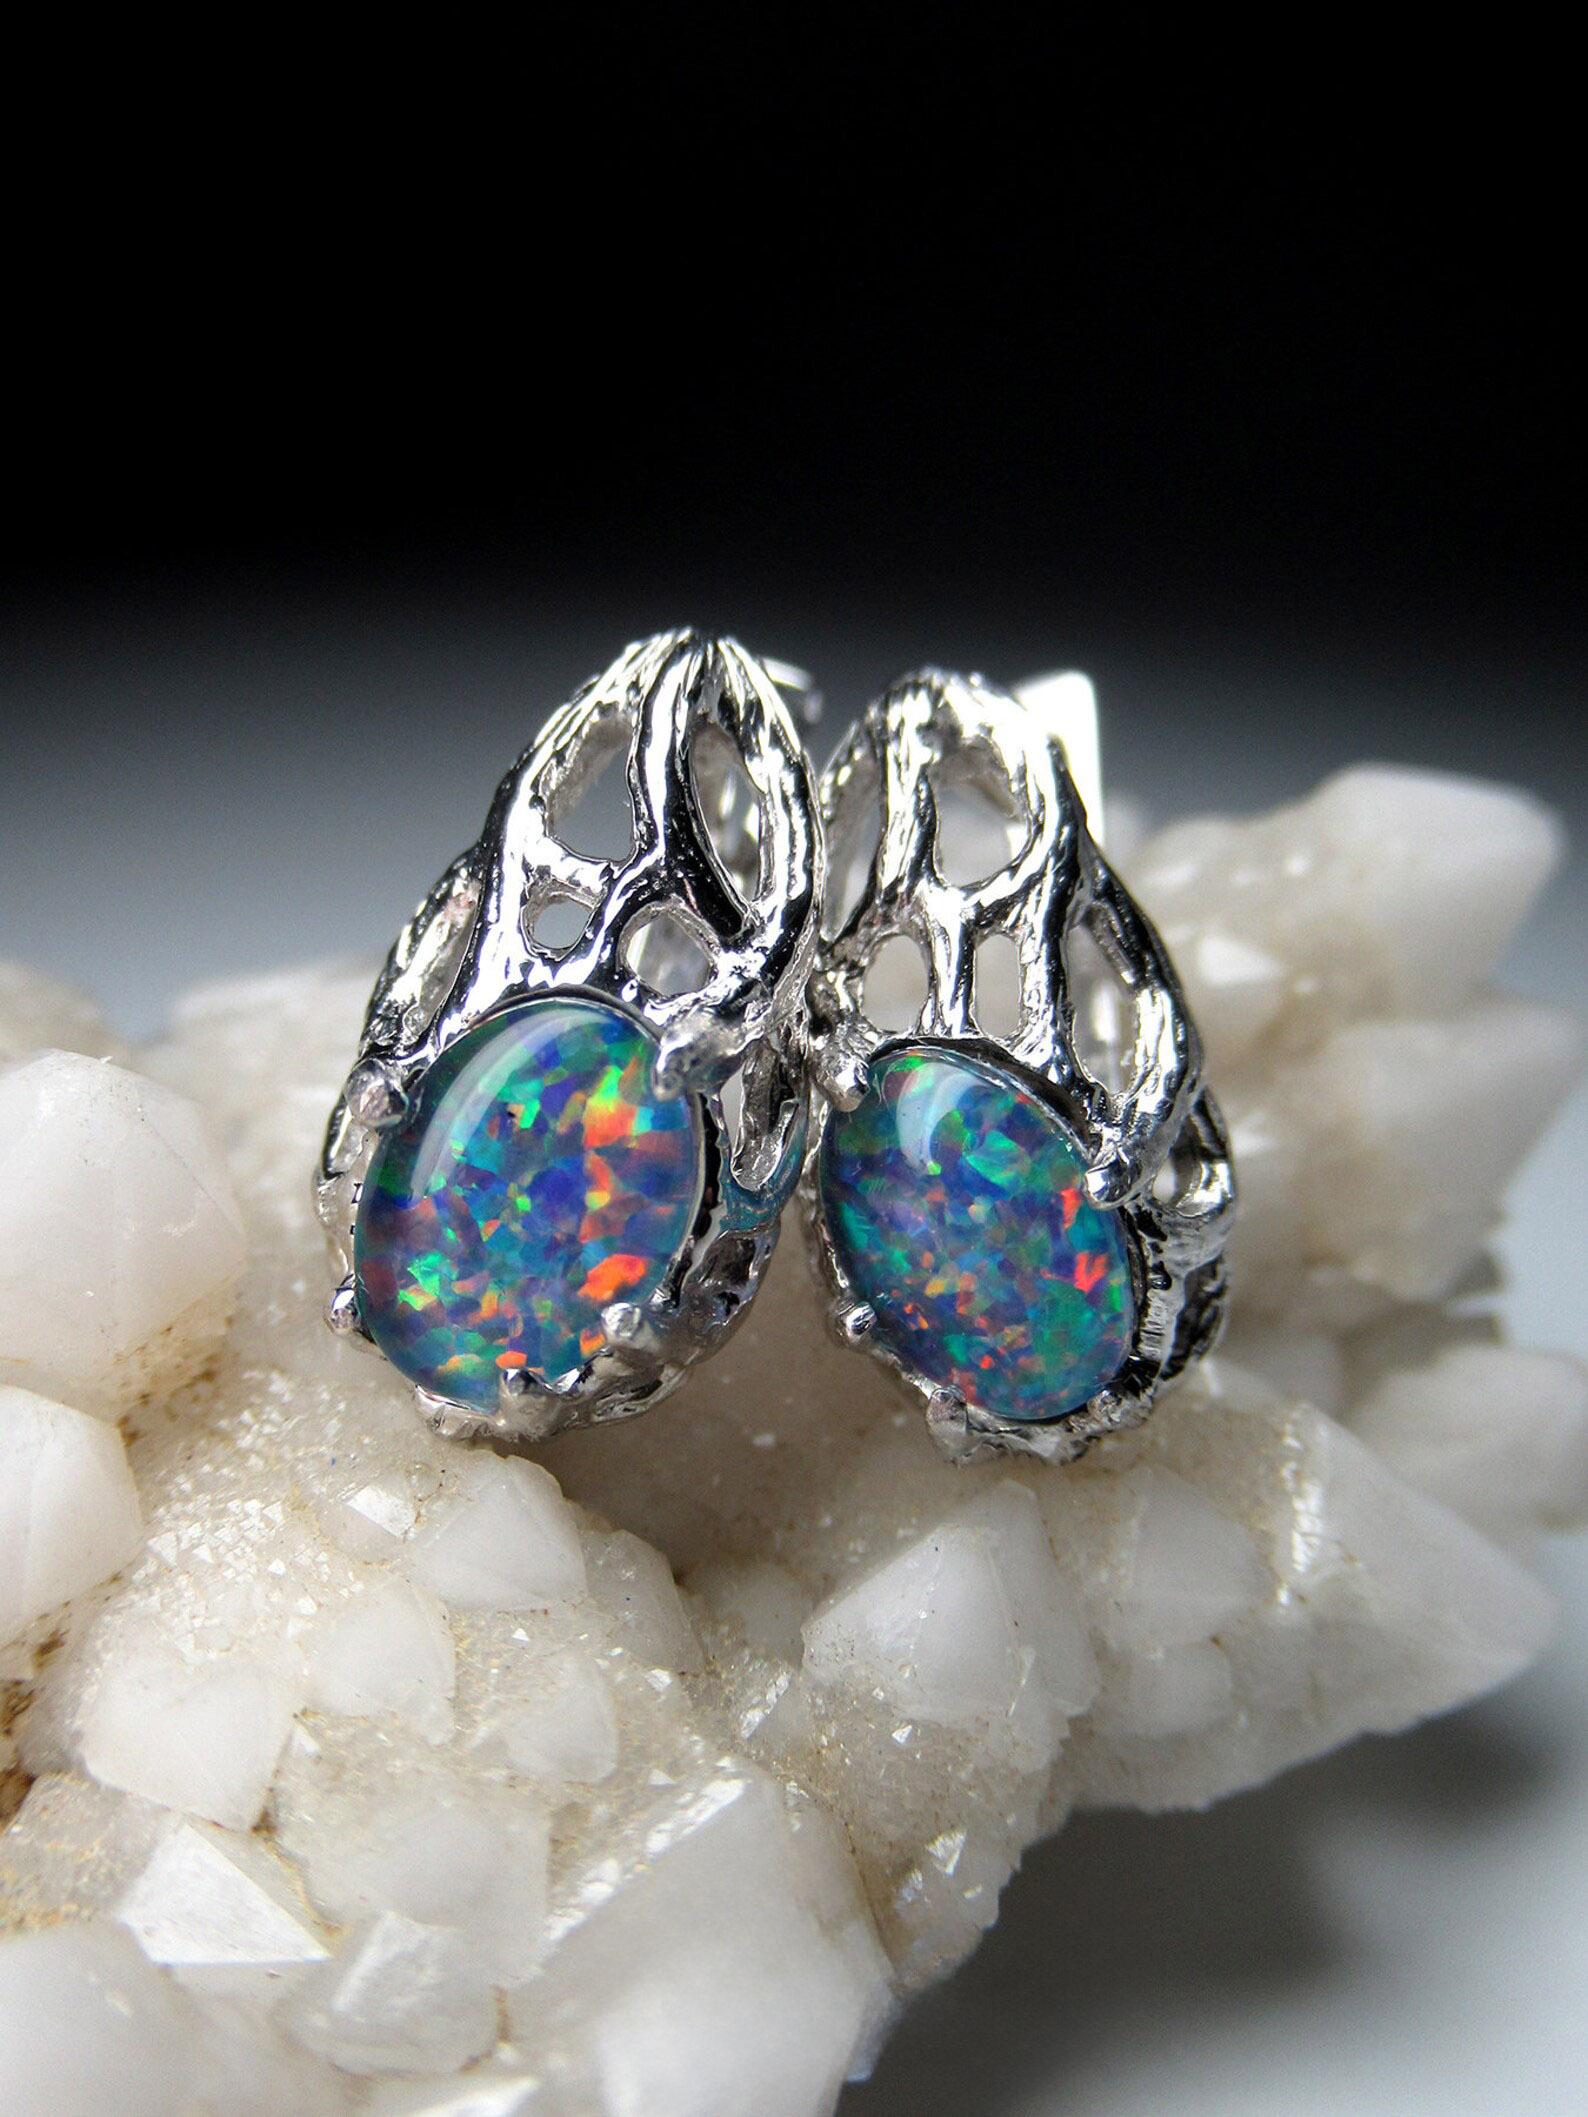 Silver earrings with Triplet Opal 
gemstone origin - Australia
opal measurements - 0.079 х 0.2 х 0.28 in / 2 х 5 х 7 mm
opal weight - 1.30 carat
earrings length - 0.59 in / 15 mm
earrings weight - 3.27 grams